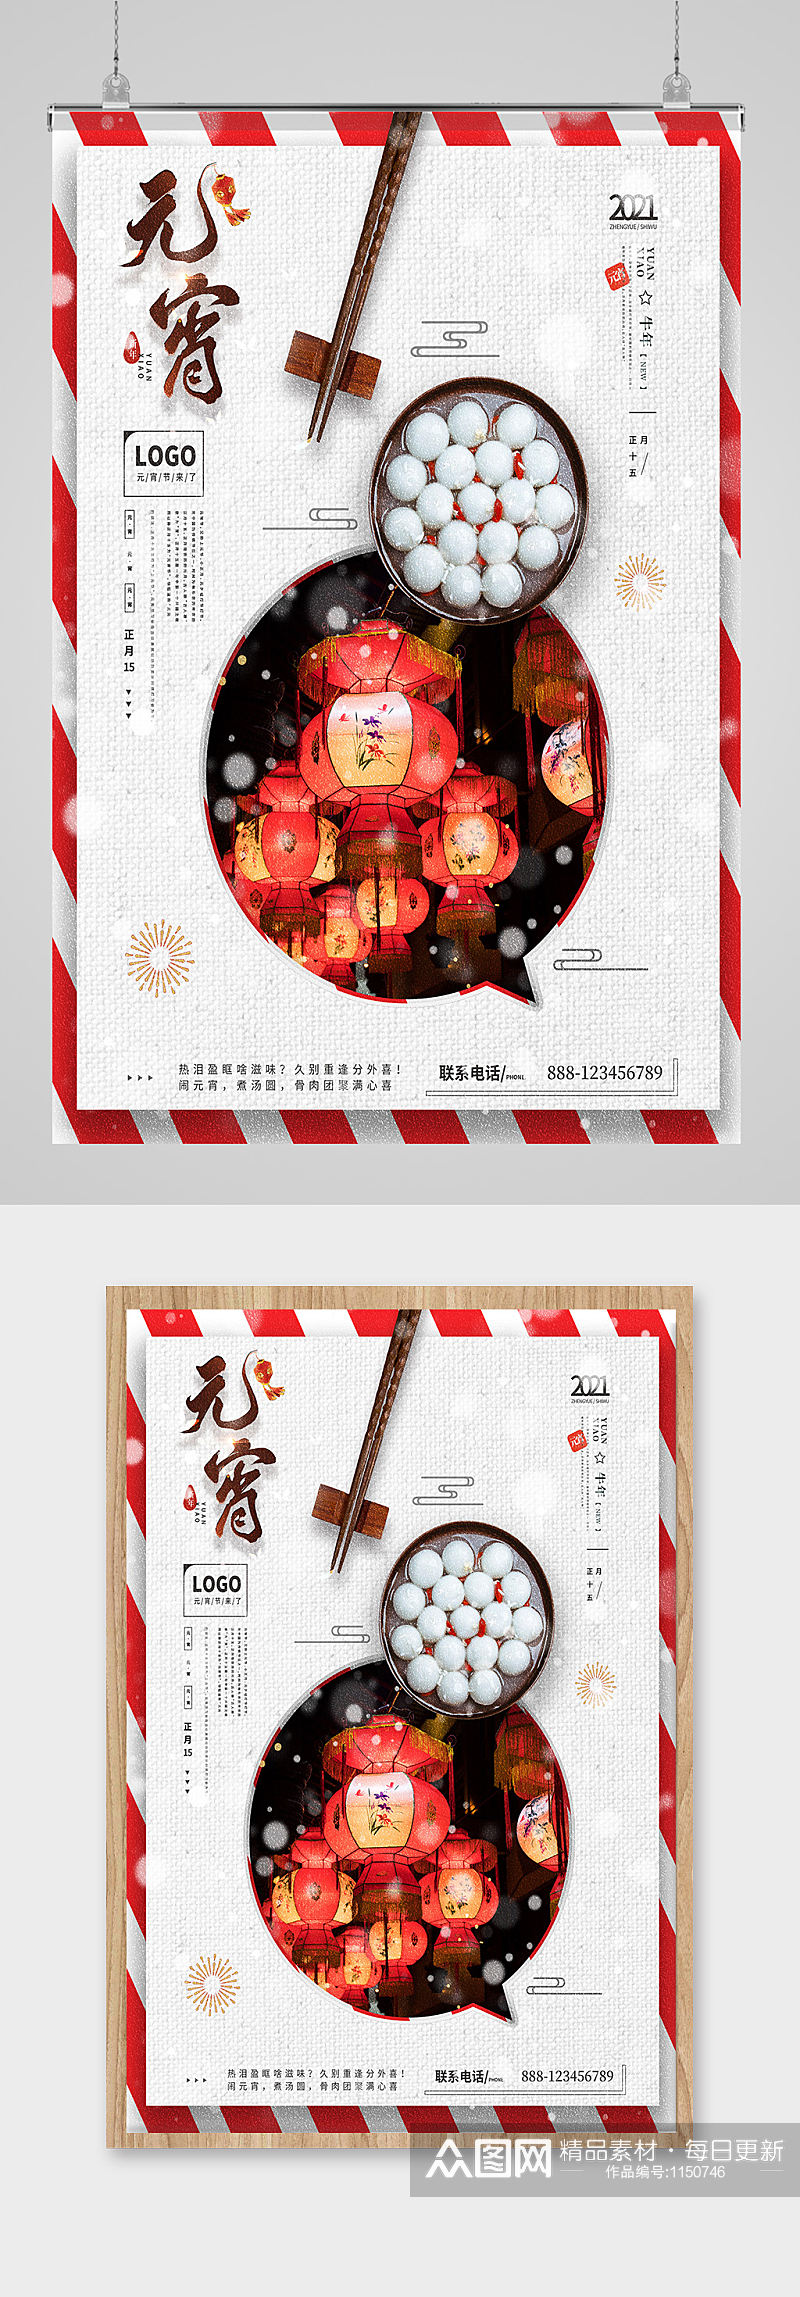 中国节日闹元宵海报设计素材